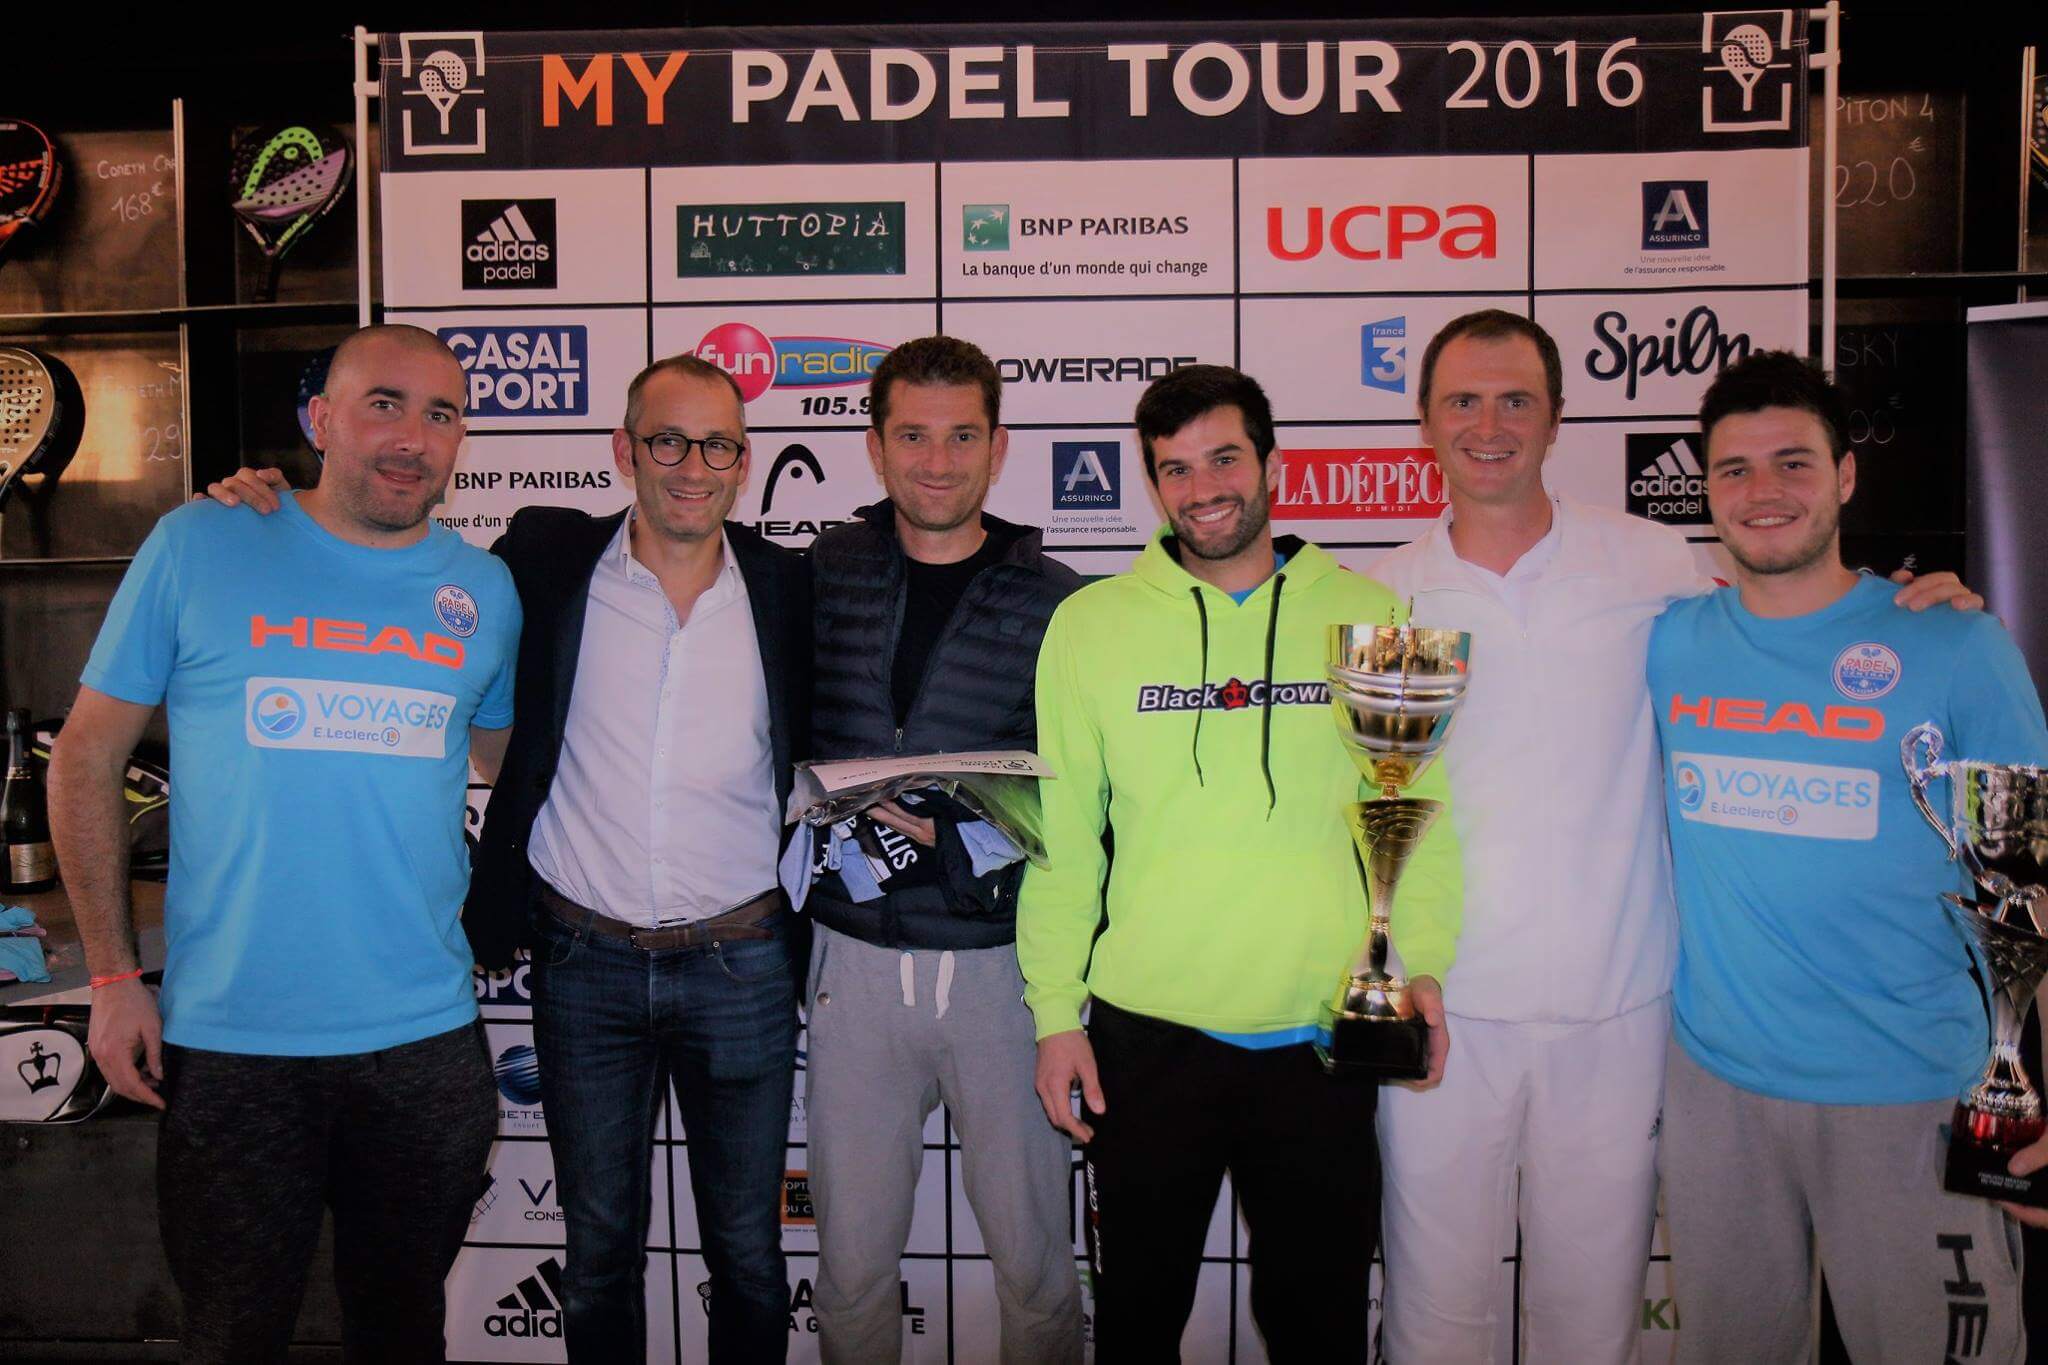 Ferrandez / Gauthier og Vandaele / Godallier vinder på My Padel Tour 2016